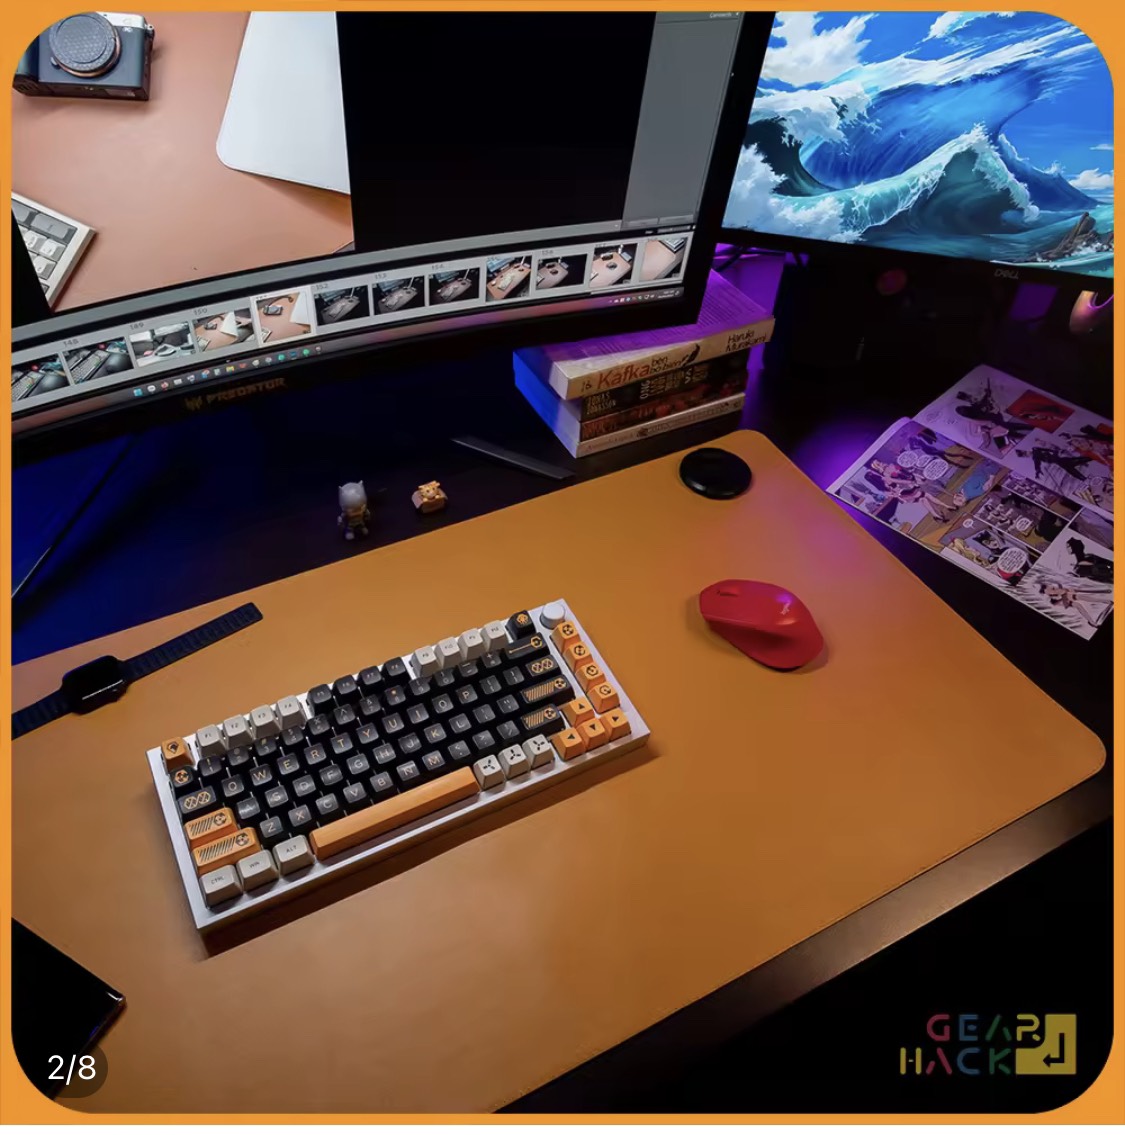 Thảm Trải Bàn Làm Việc Deskpad Da PU size Lớn Kiêm Miếng Lót Chuột Máy Tính Cỡ Lớn 40x80 cm - Hàng Chính Hãng